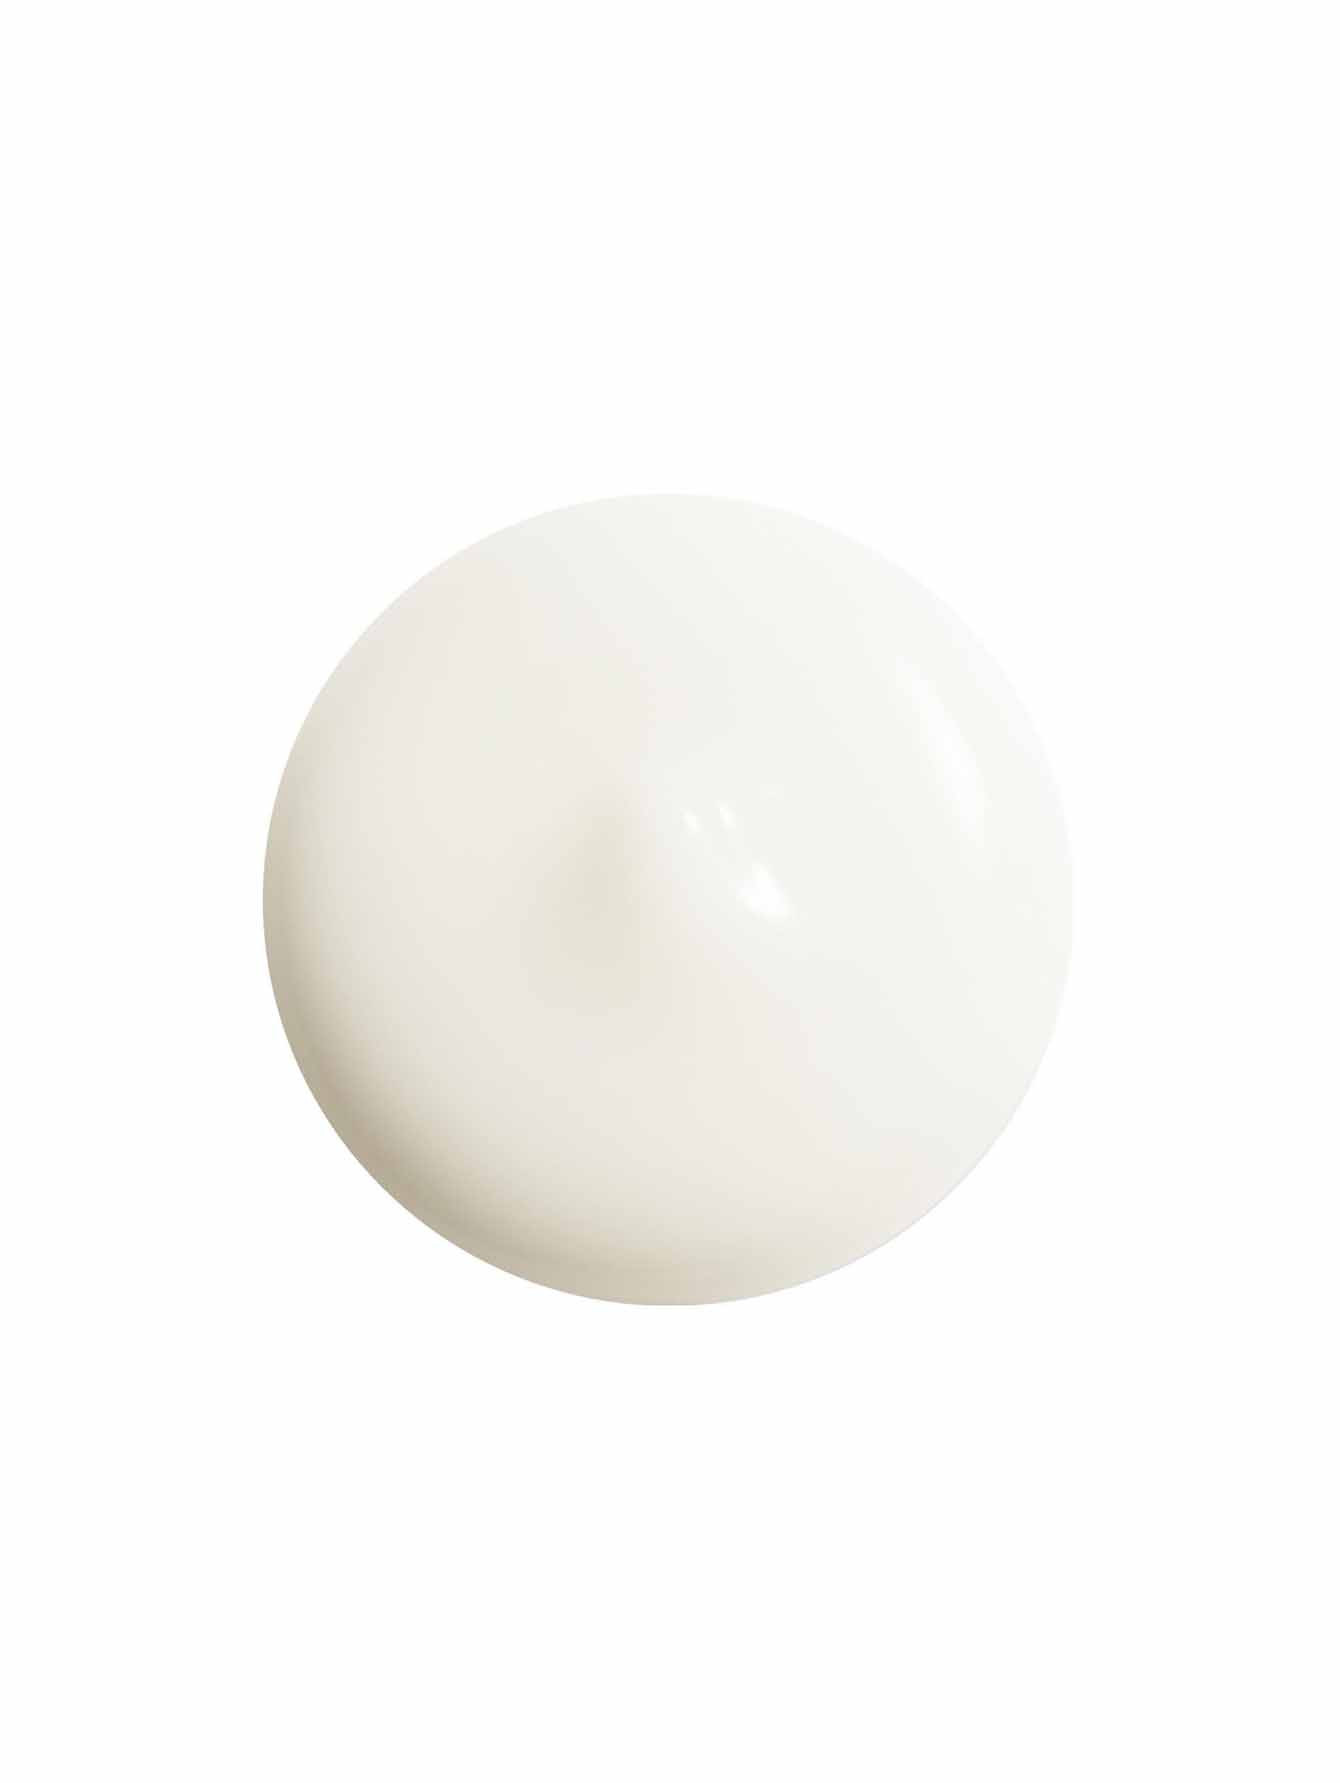 SHISEIDO White Lucent Осветляющая сыворотка против пигментных пятен, 30 мл - Обтравка1